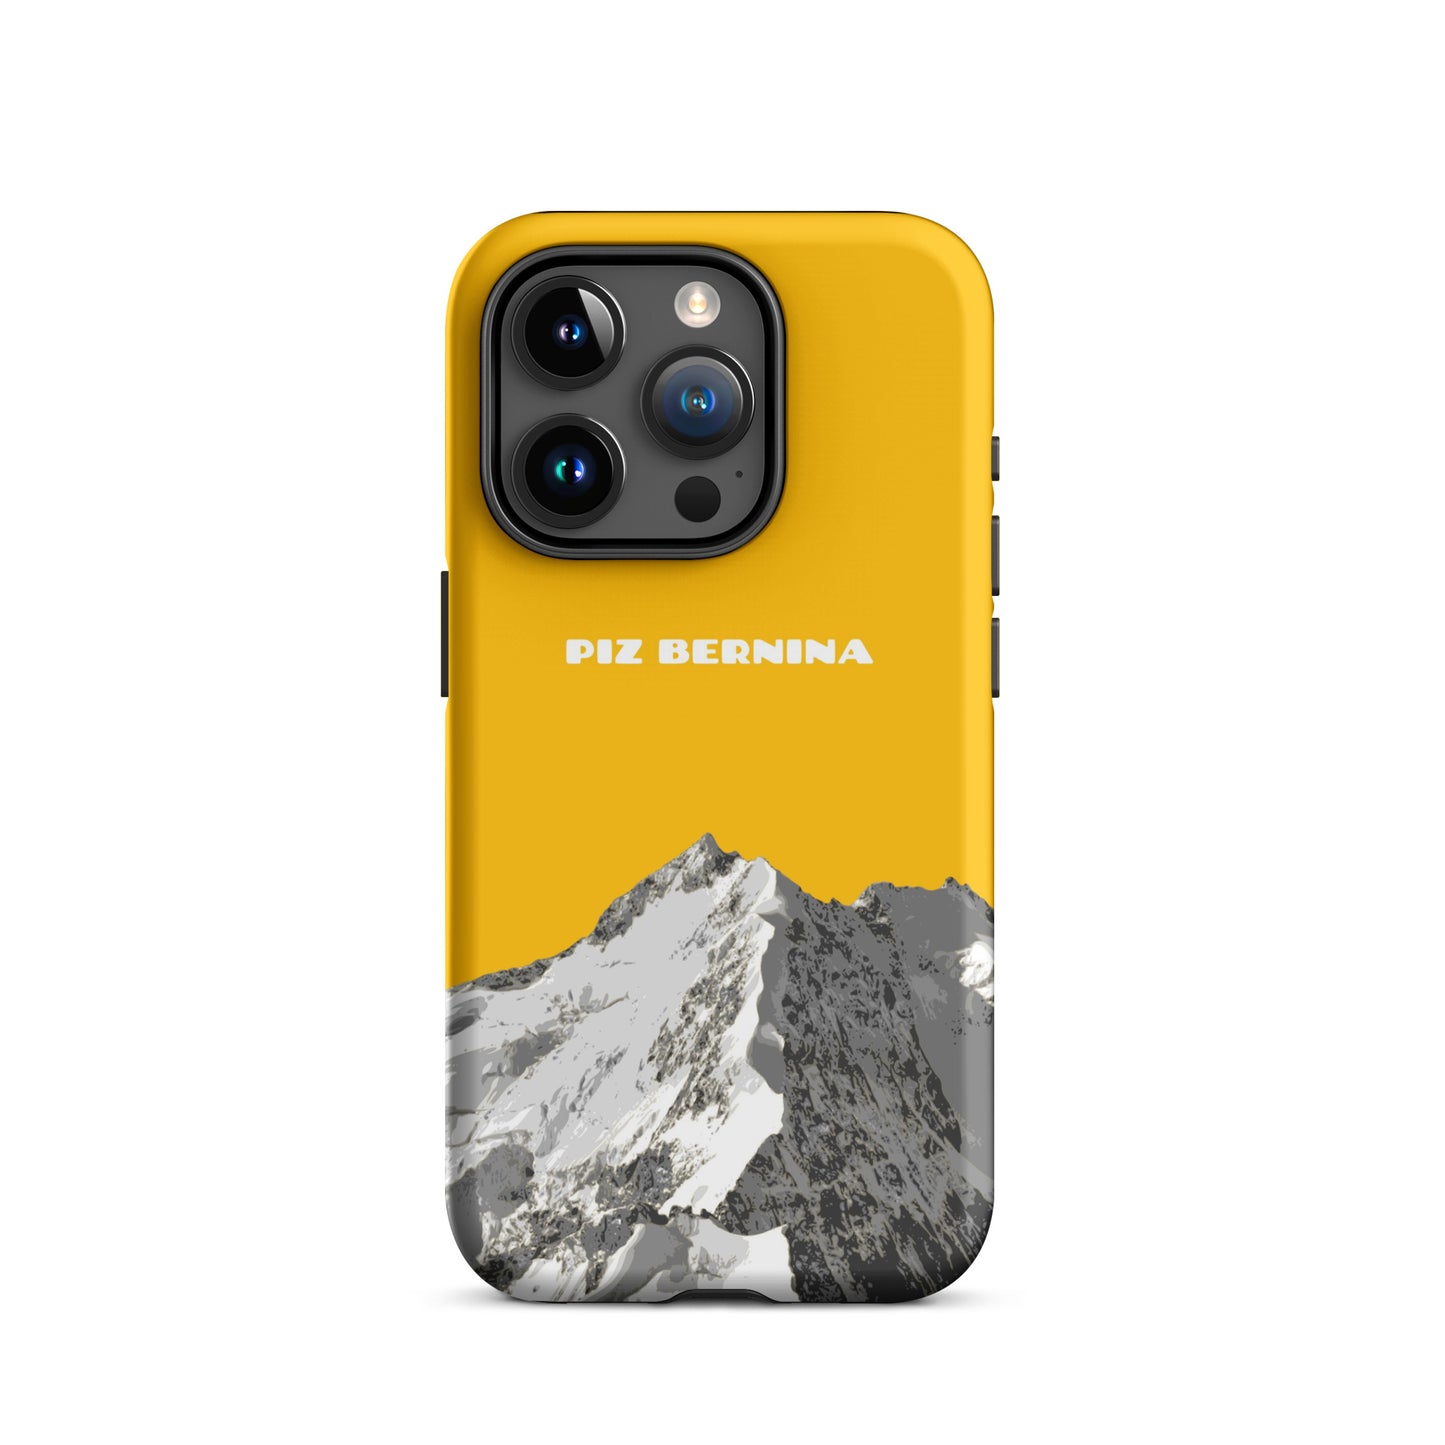 Hülle für das iPhone 15 Pro von Apple in der Farbe Goldgelb, dass den Piz Bernina in Graubünden zeigt.